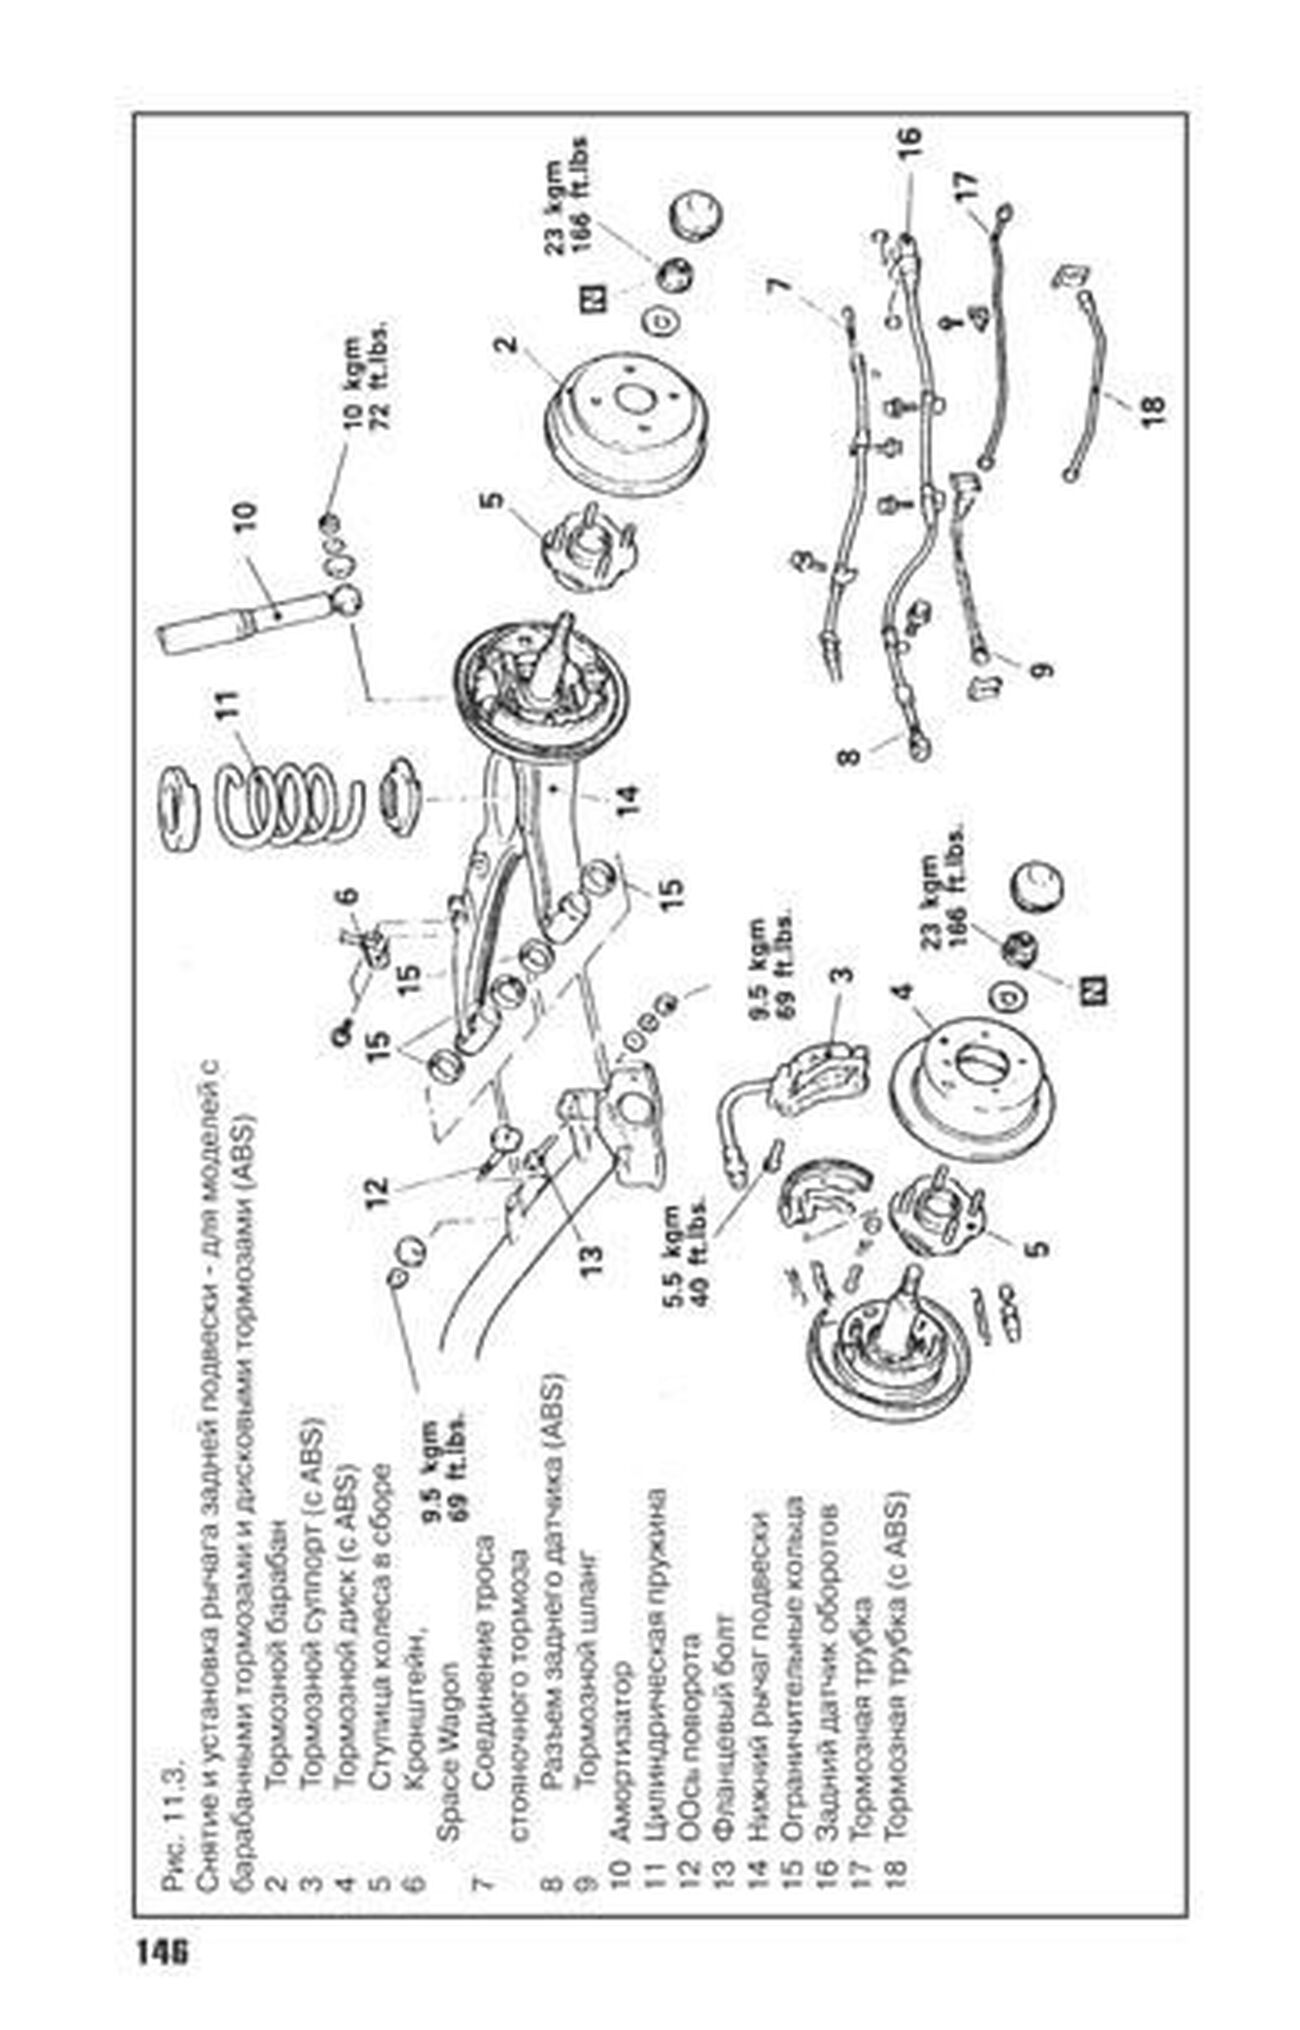 Книга: MITSUBISHI SPACE RUNNER / WAGON (б , д) с 1992 г.в., рем., то | Автонавигатор